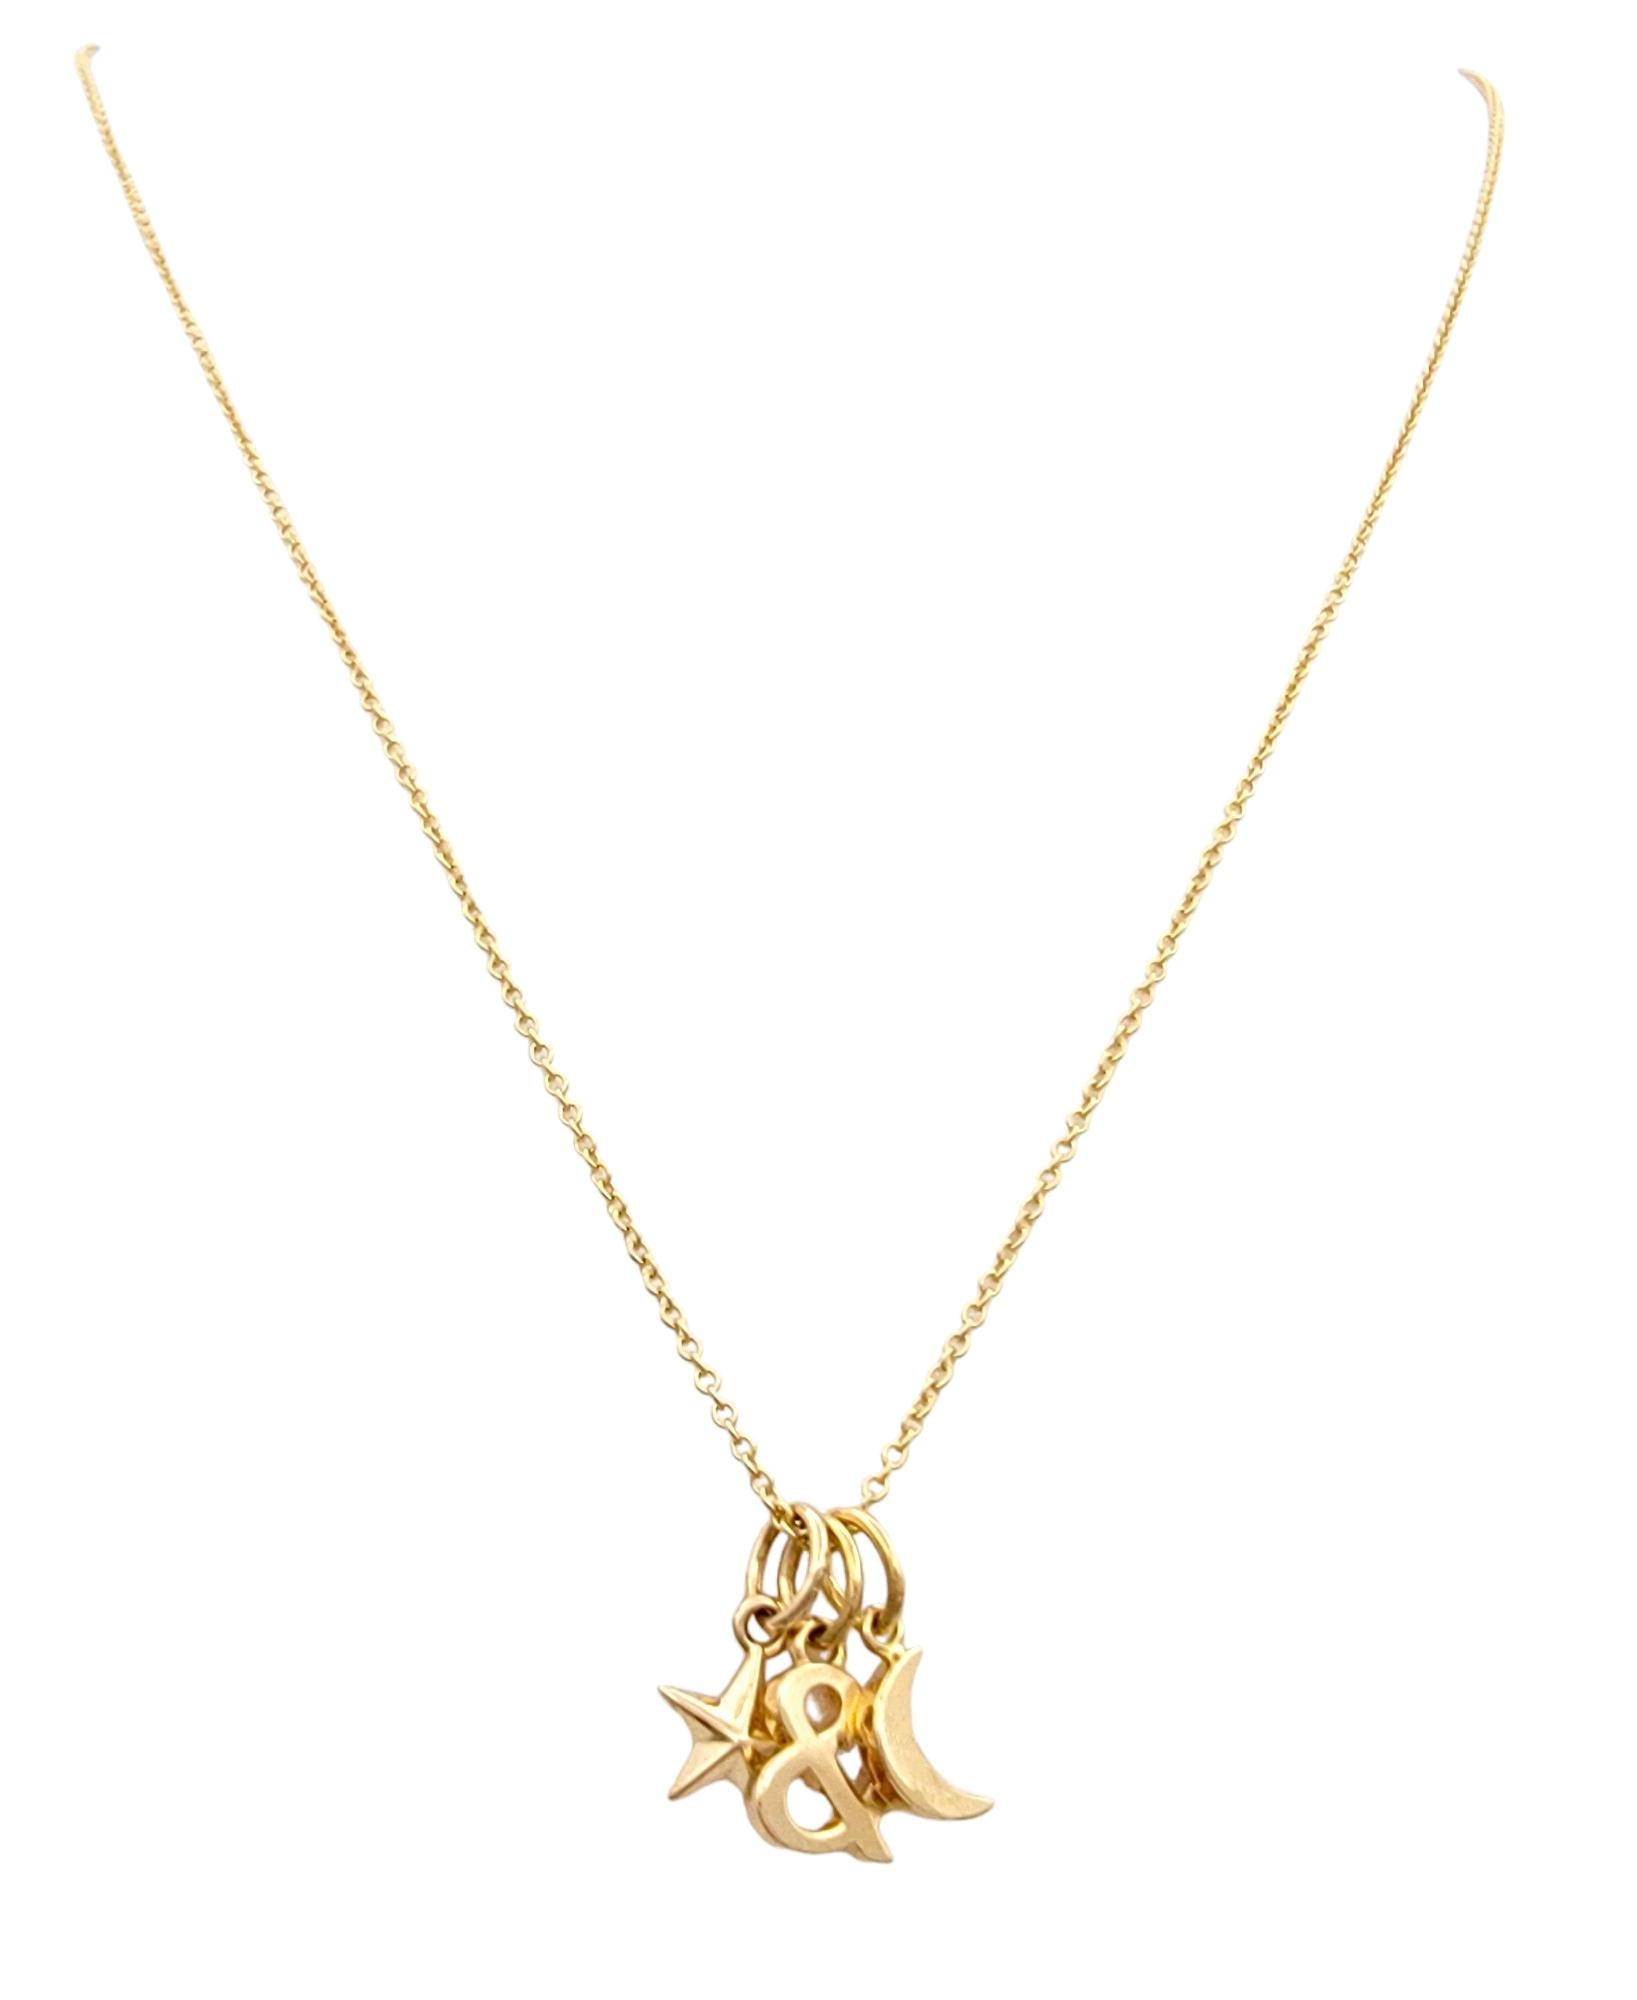 Diese wunderschöne Tiffany & Co. Charm-Halskette aus 18 Karat Roségold ist ein zartes und skurriles Stück, das den Zauber des Nachthimmels einfängt. An einer zierlichen Kabelkette hängen drei charmante Anhänger: ein Stern, ein Mond und ein